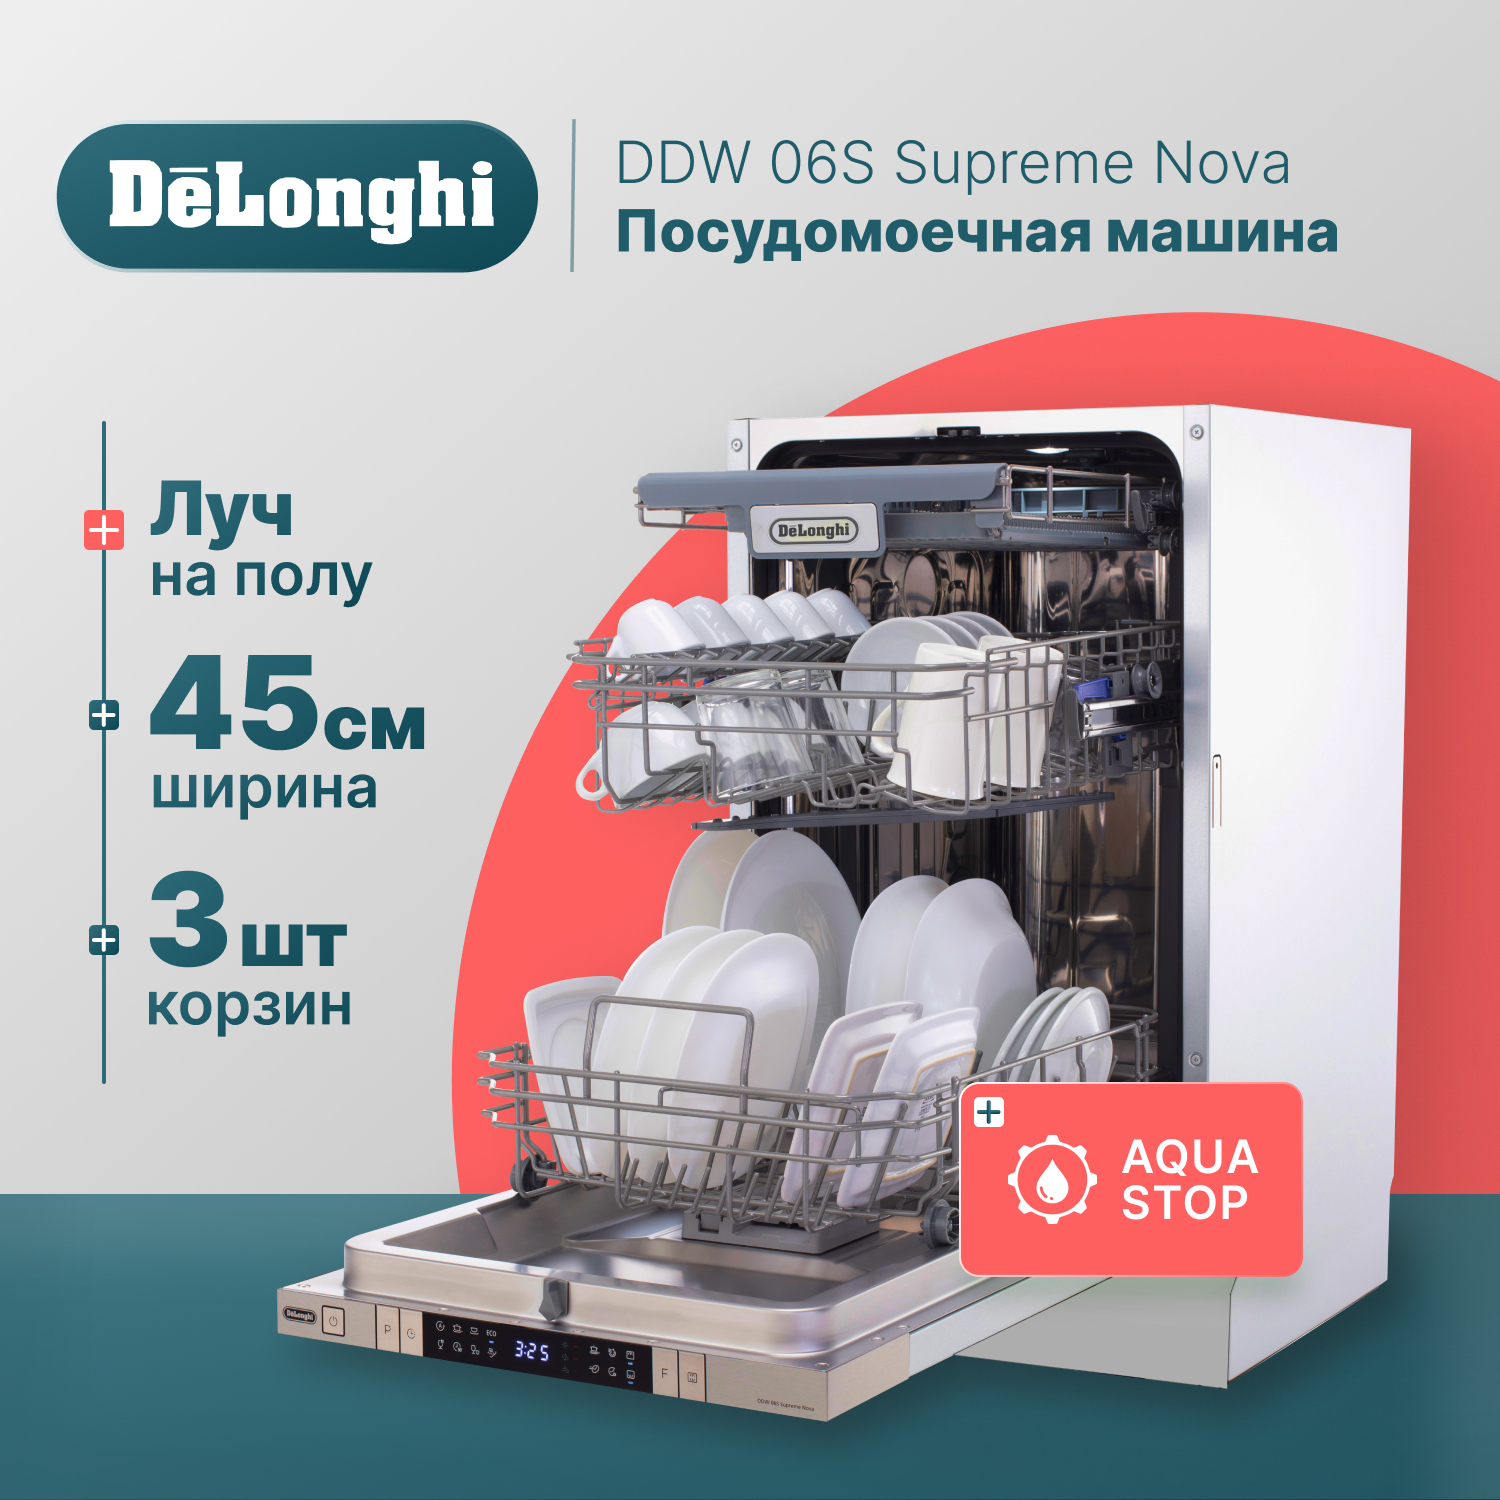 Встраиваемая посудомоечная машина Delonghi DDW06S Supreme Nova встраиваемая посудомоечная машина delonghi ddw08s